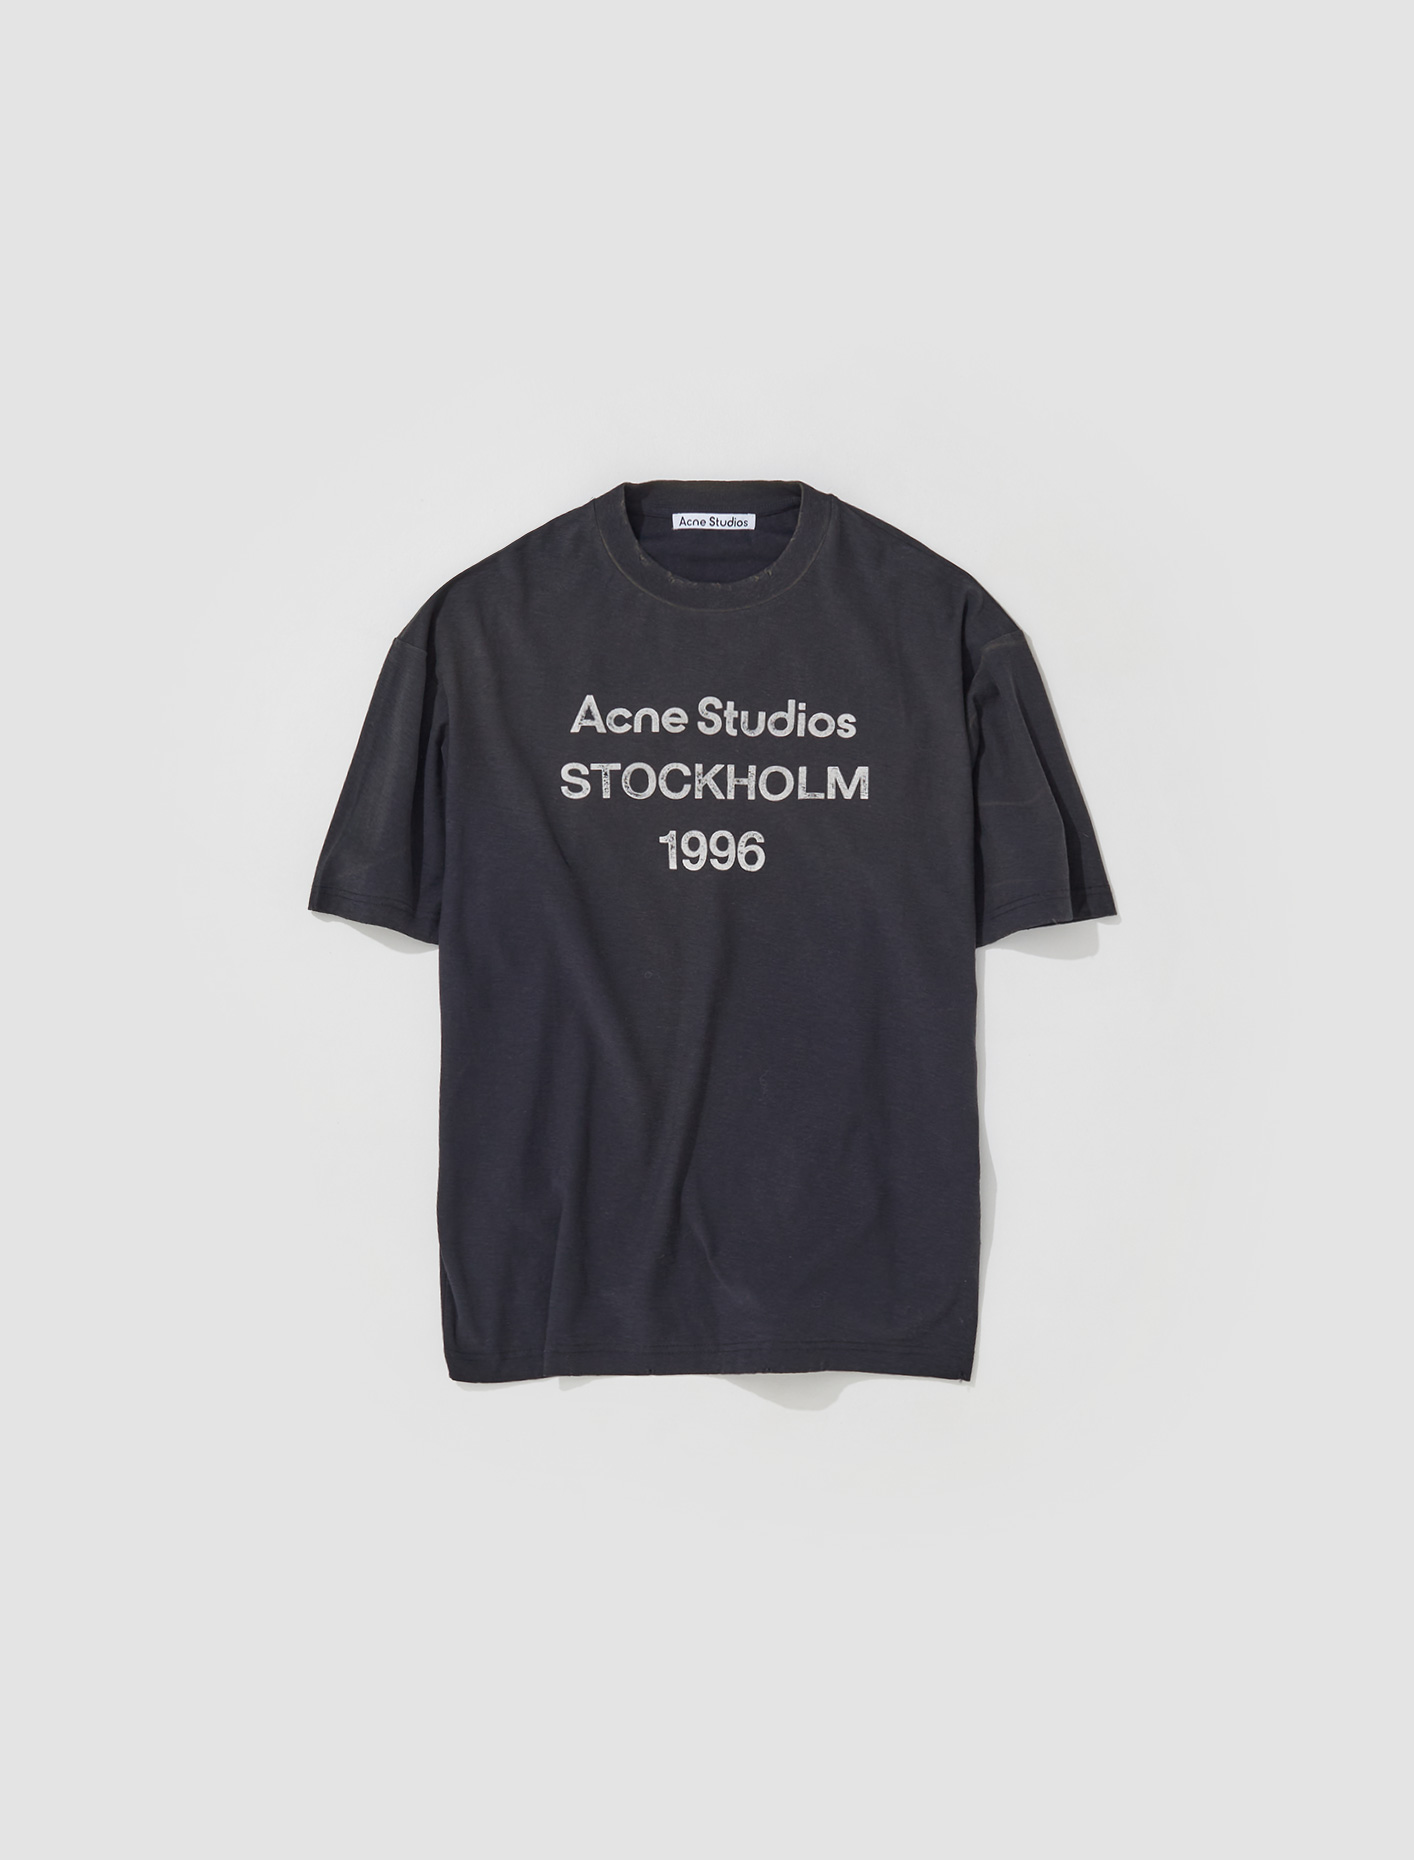 Acne Studios Logo T-Shirt in Faded Black | Voo Store Berlin | Worldwide ...